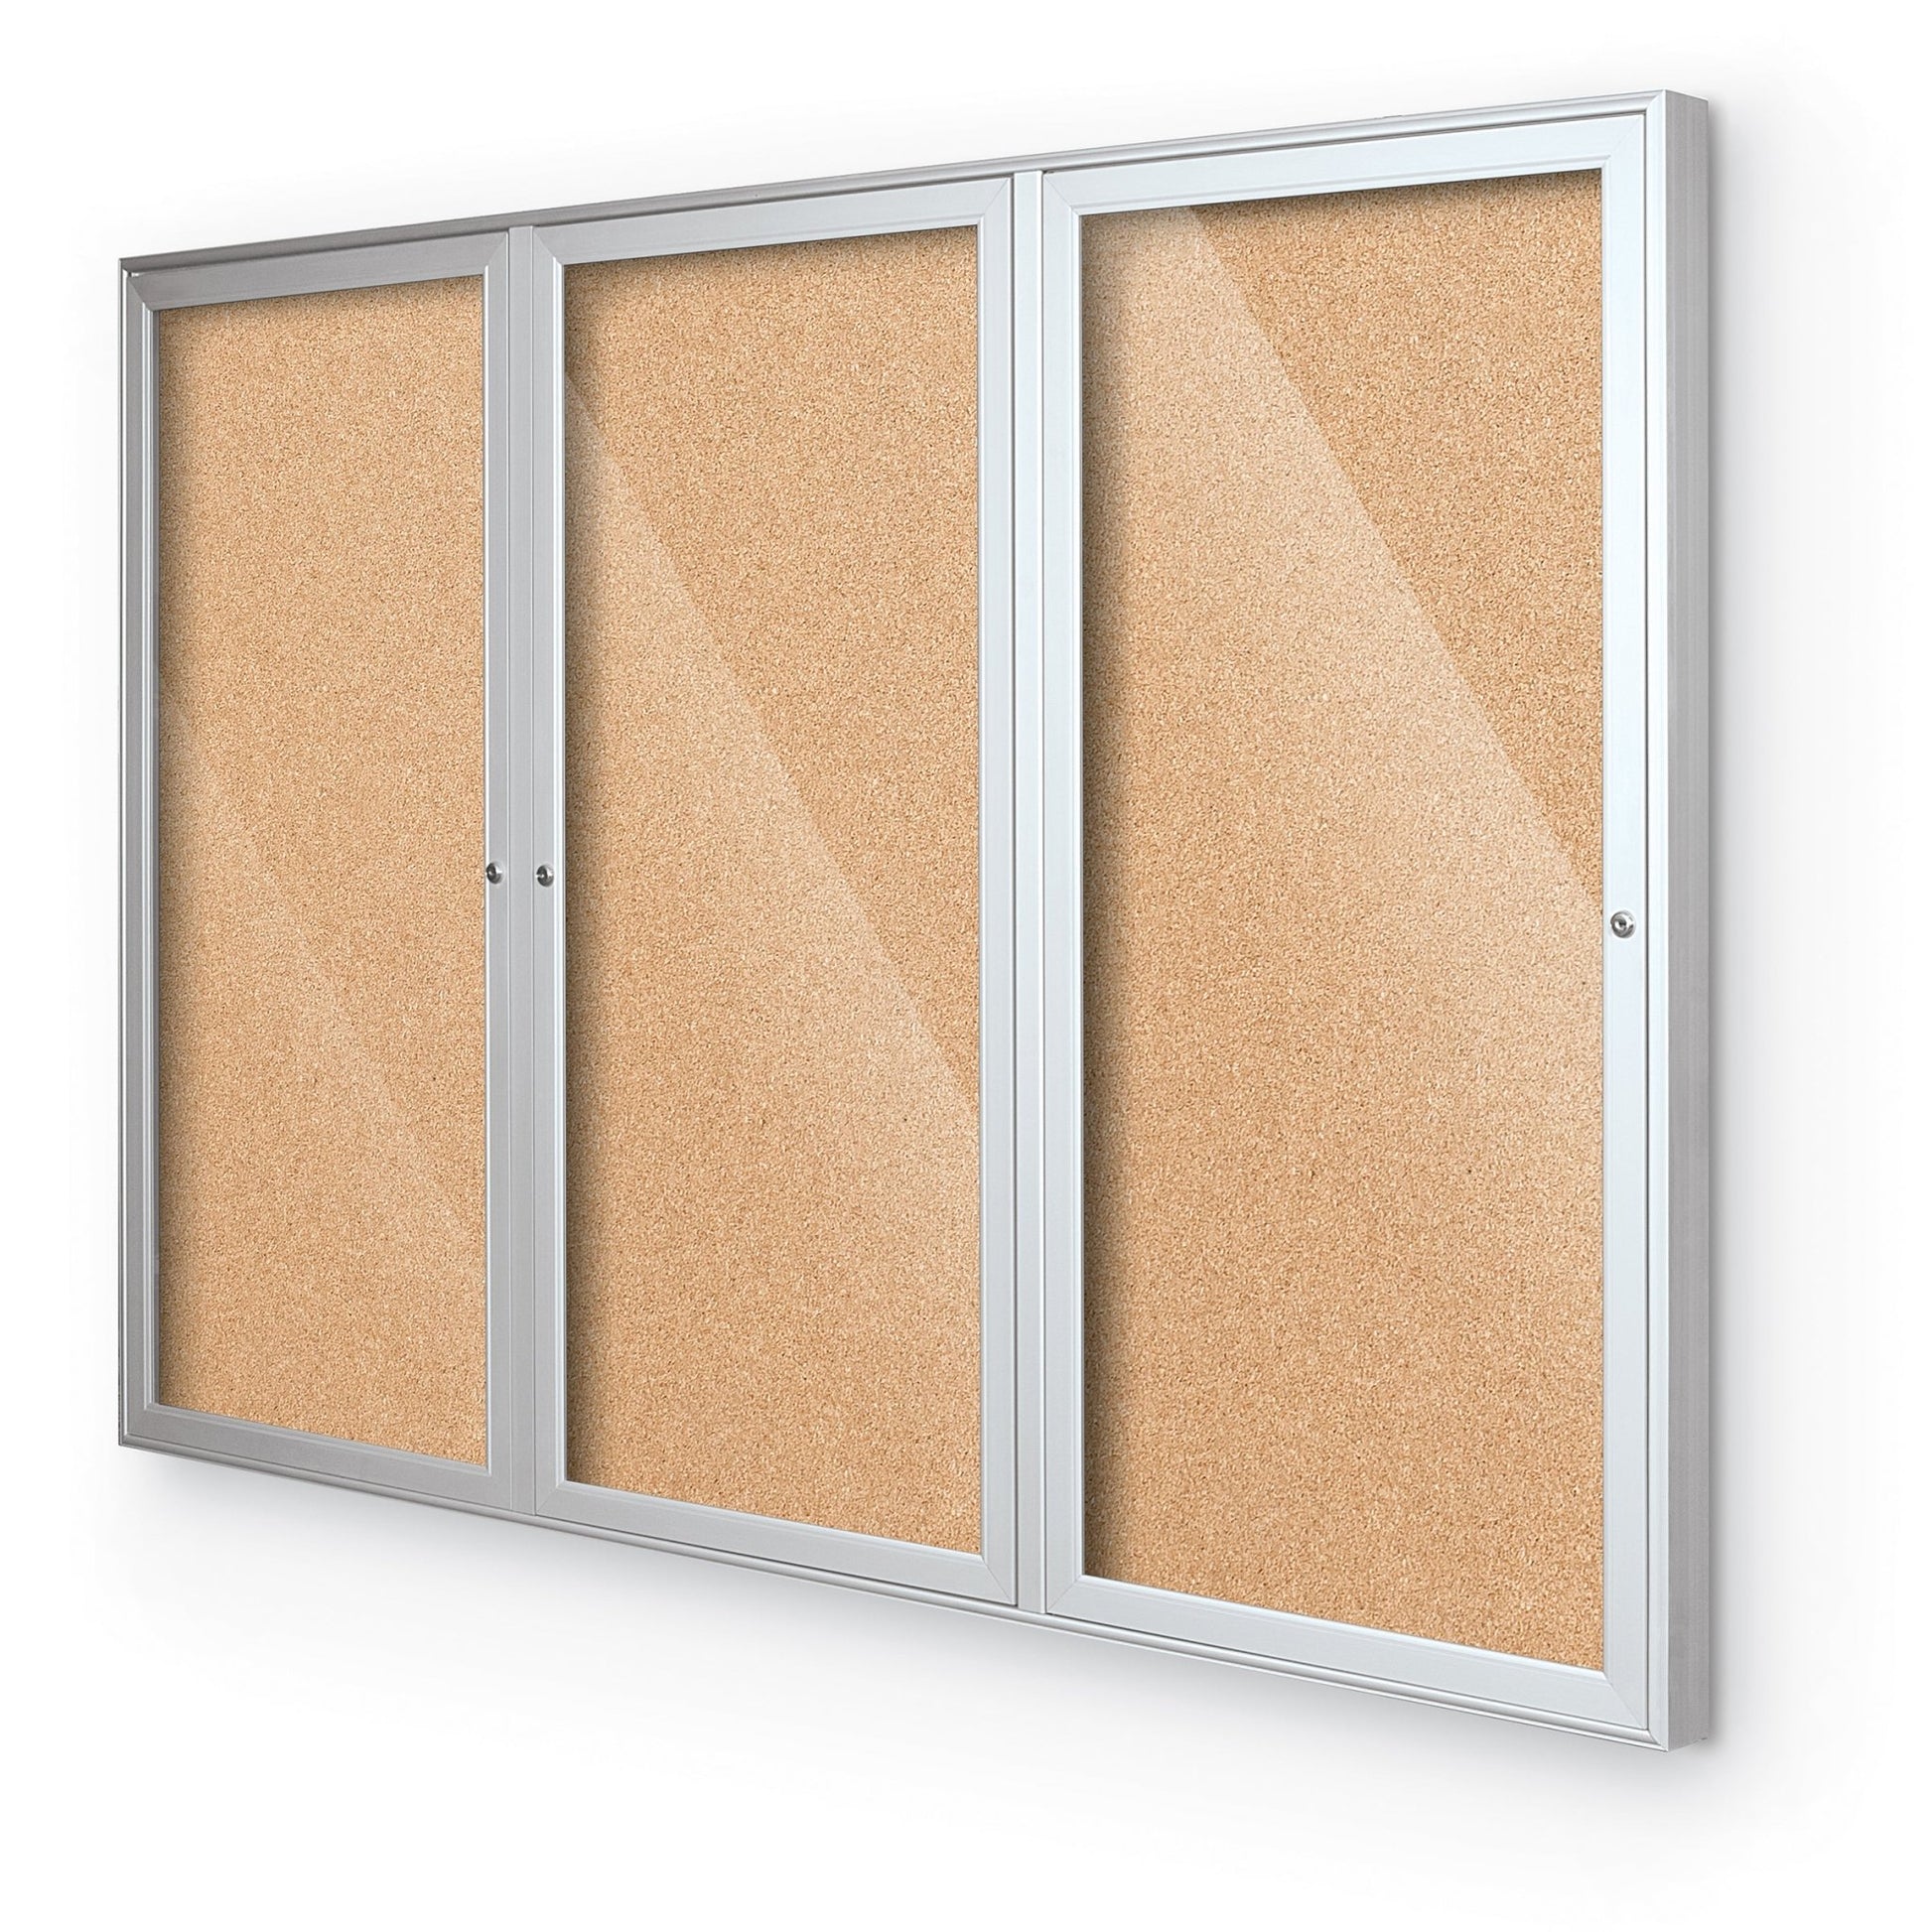 Mooreco Outdoor Enclosed Bulletin Board Cabinet - 1, 2 or 3 Door Silver Aluminum Trim - SchoolOutlet